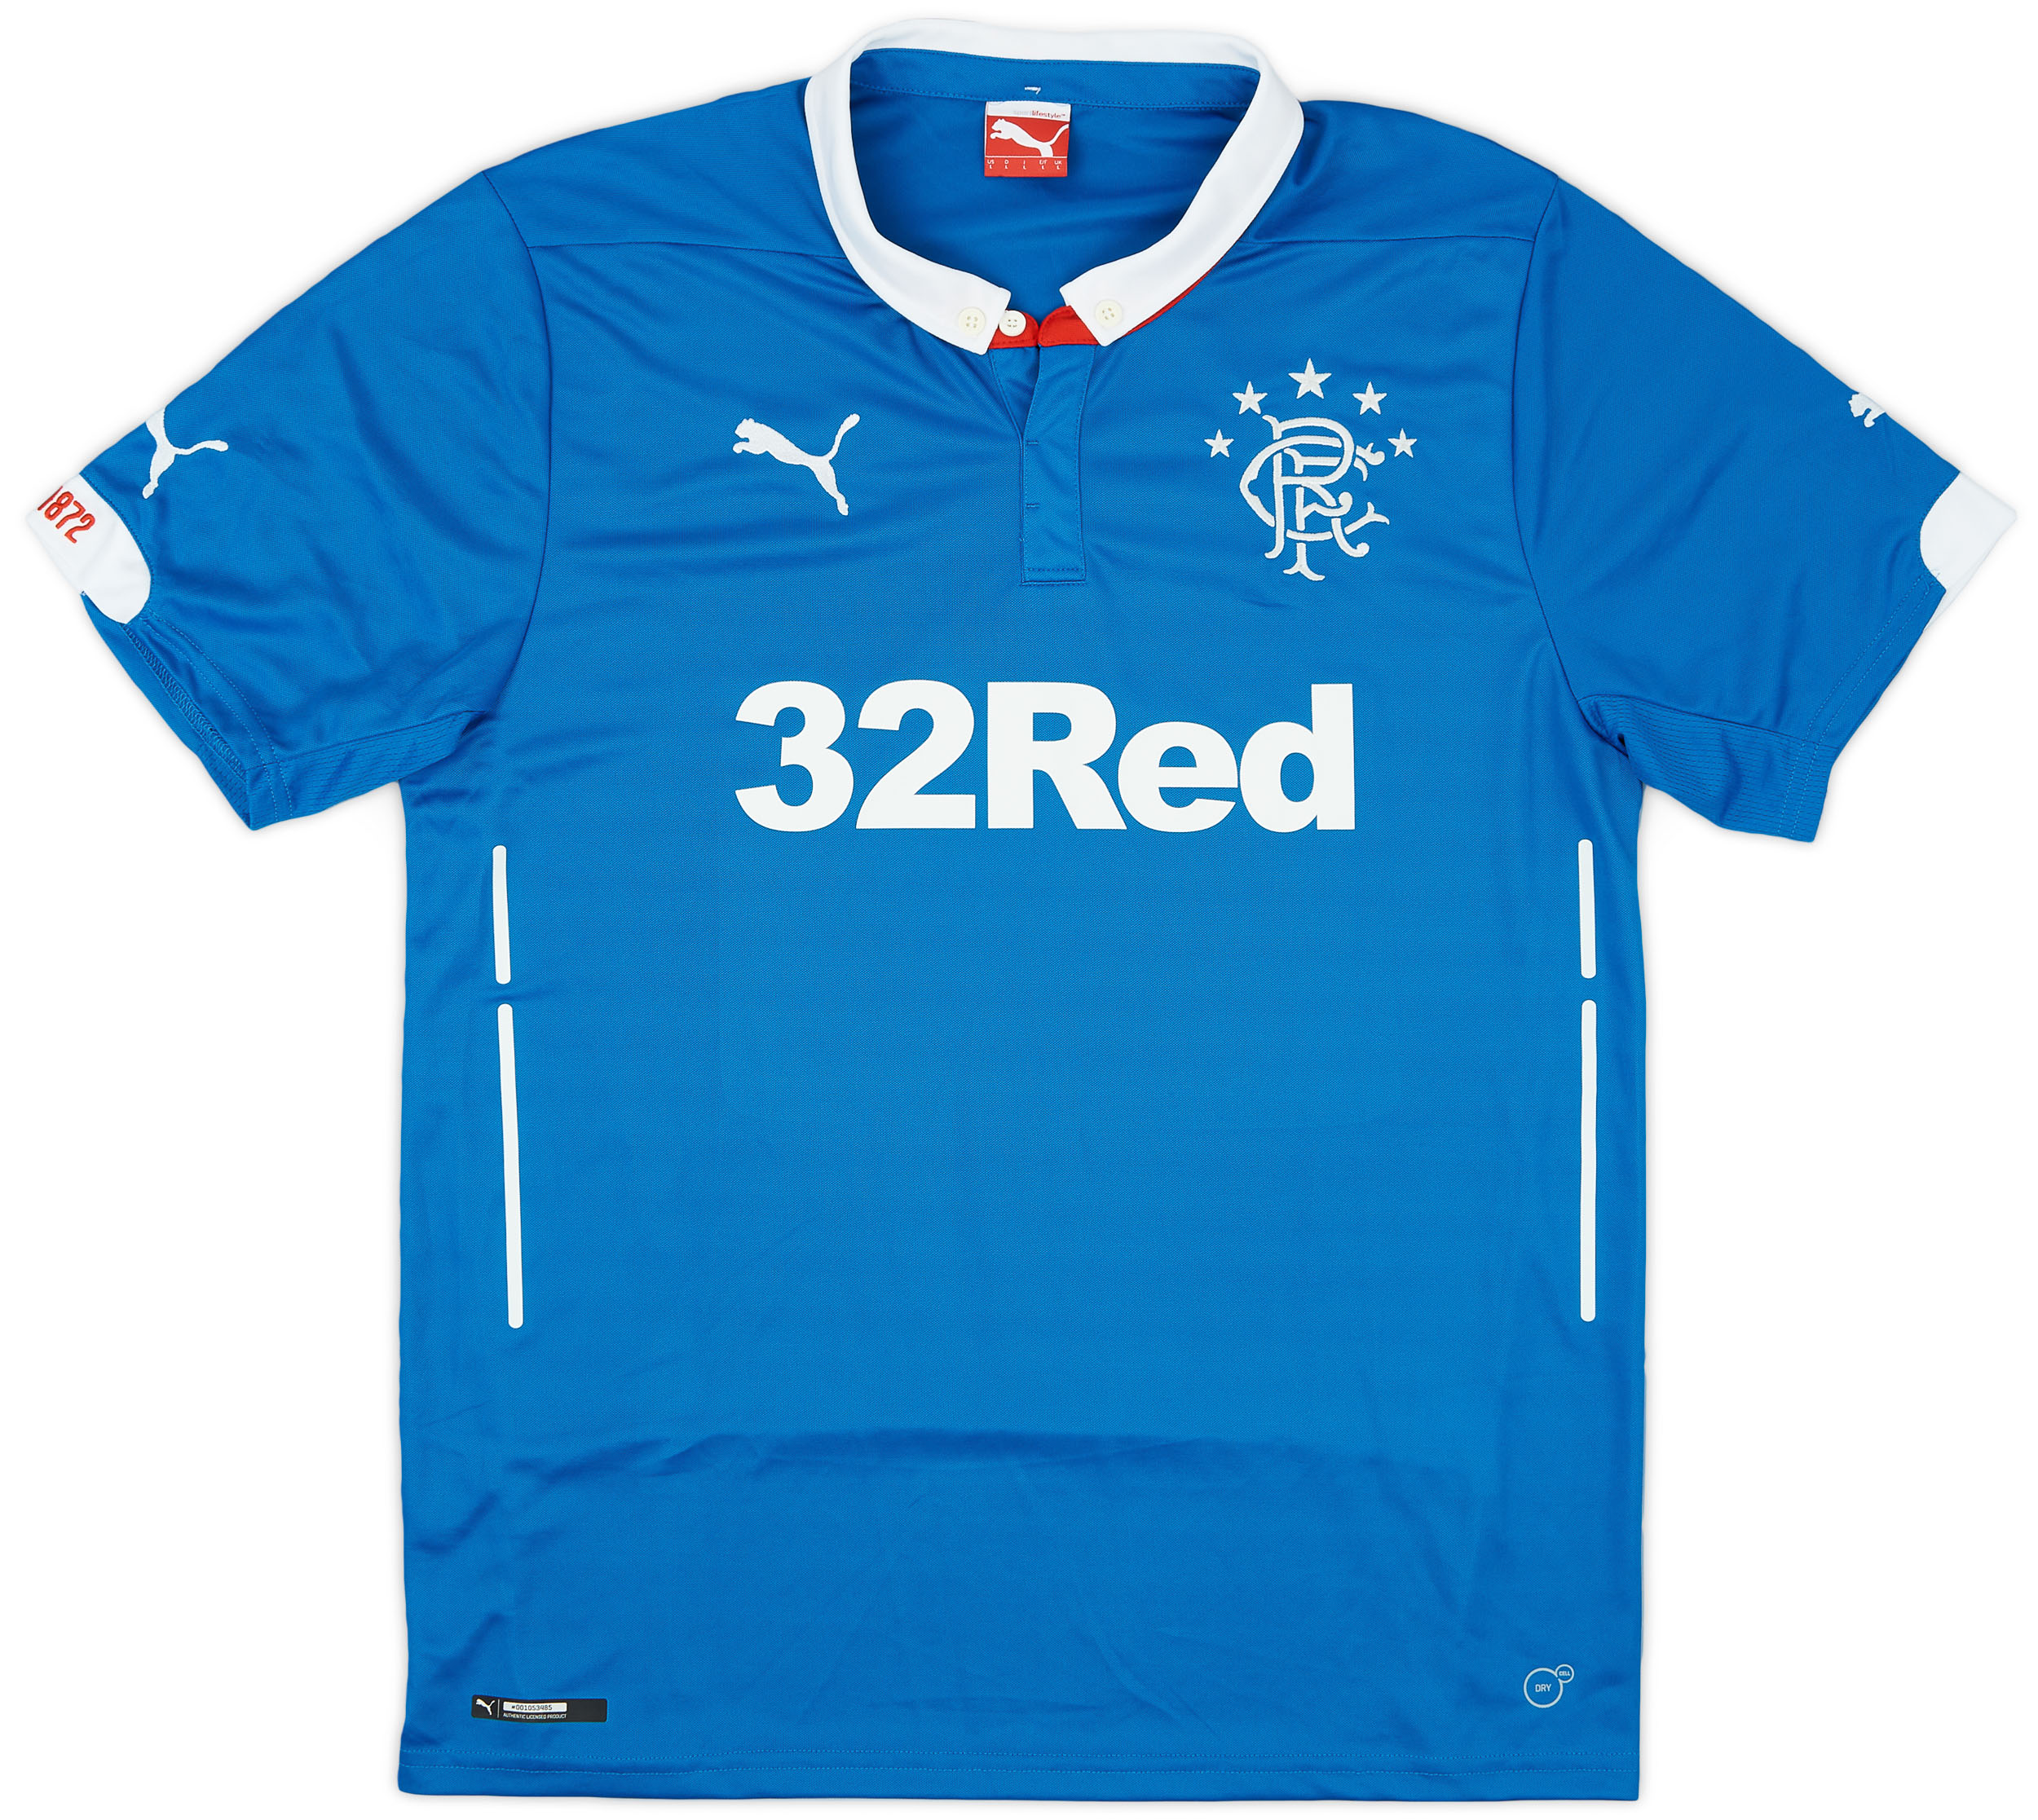 2014-15 Rangers Home Shirt - 9/10 - ()